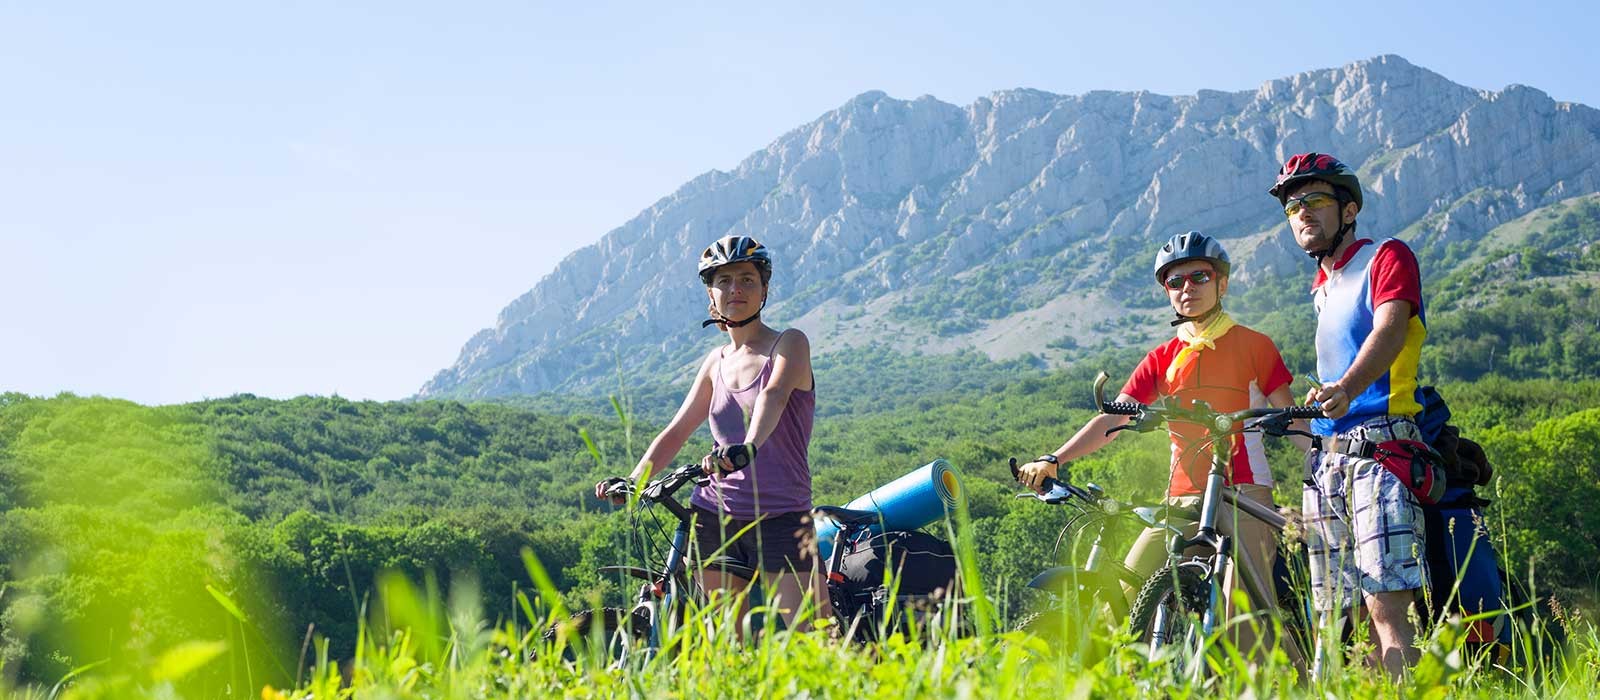 Escursioni in bicicletta - AIGAE Associazione Italiana Guide Ambientali Escursionistiche